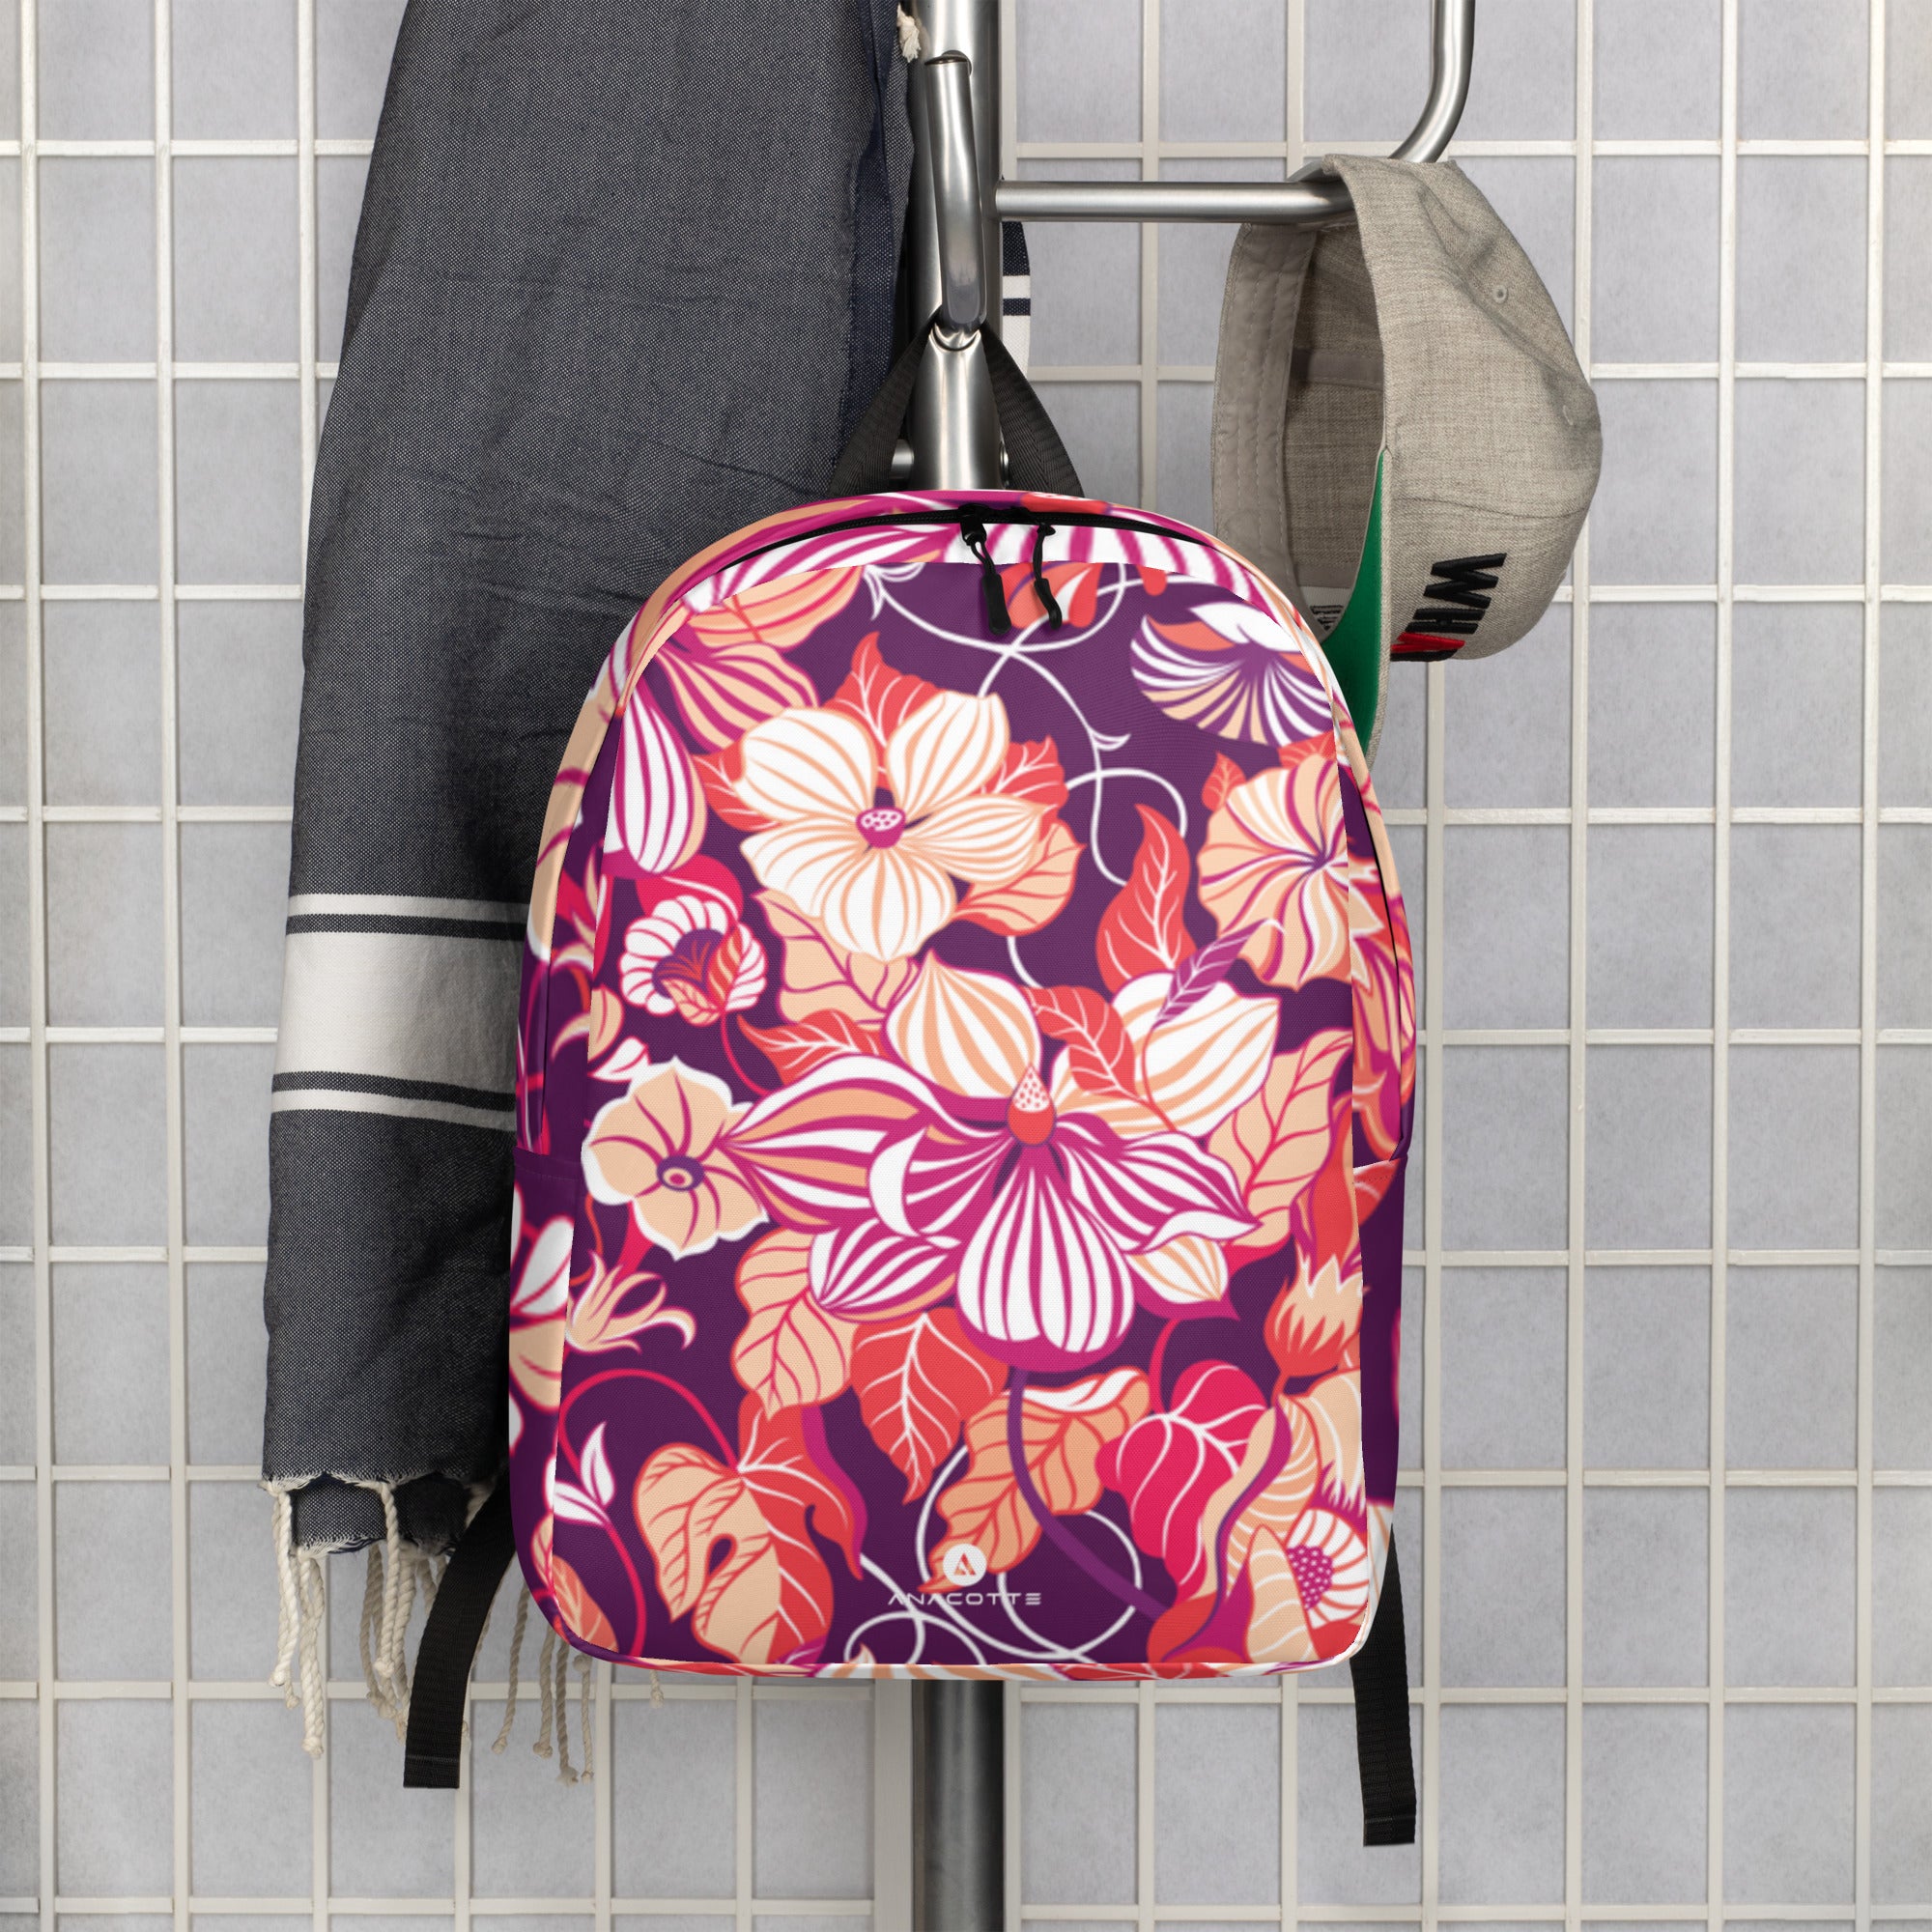 Anacotte Vivid Floral Backpack